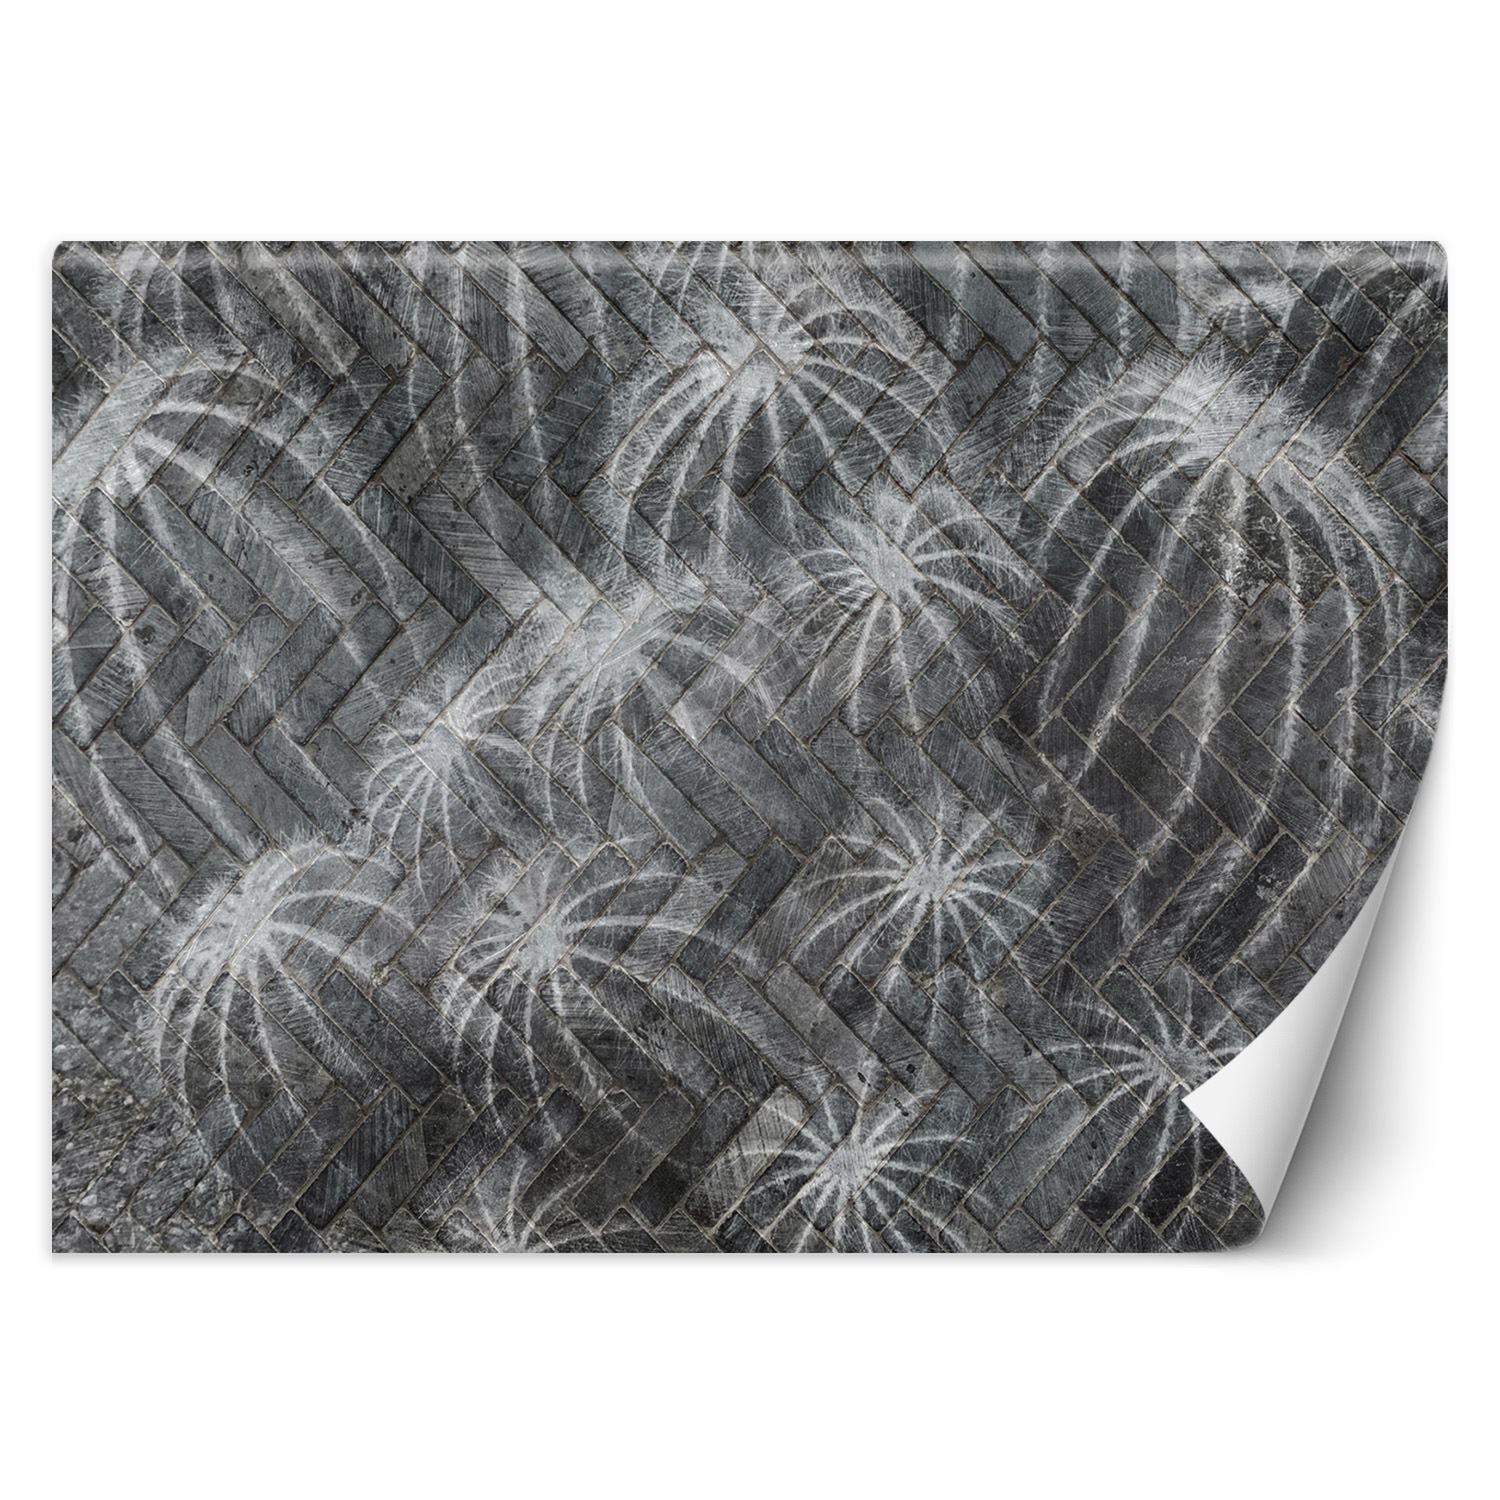 Trend24 – Behang – Cactussen In Grijs – Behangpapier – Behang Woonkamer – Fotobehang – 350×245 cm – Incl. behanglijm